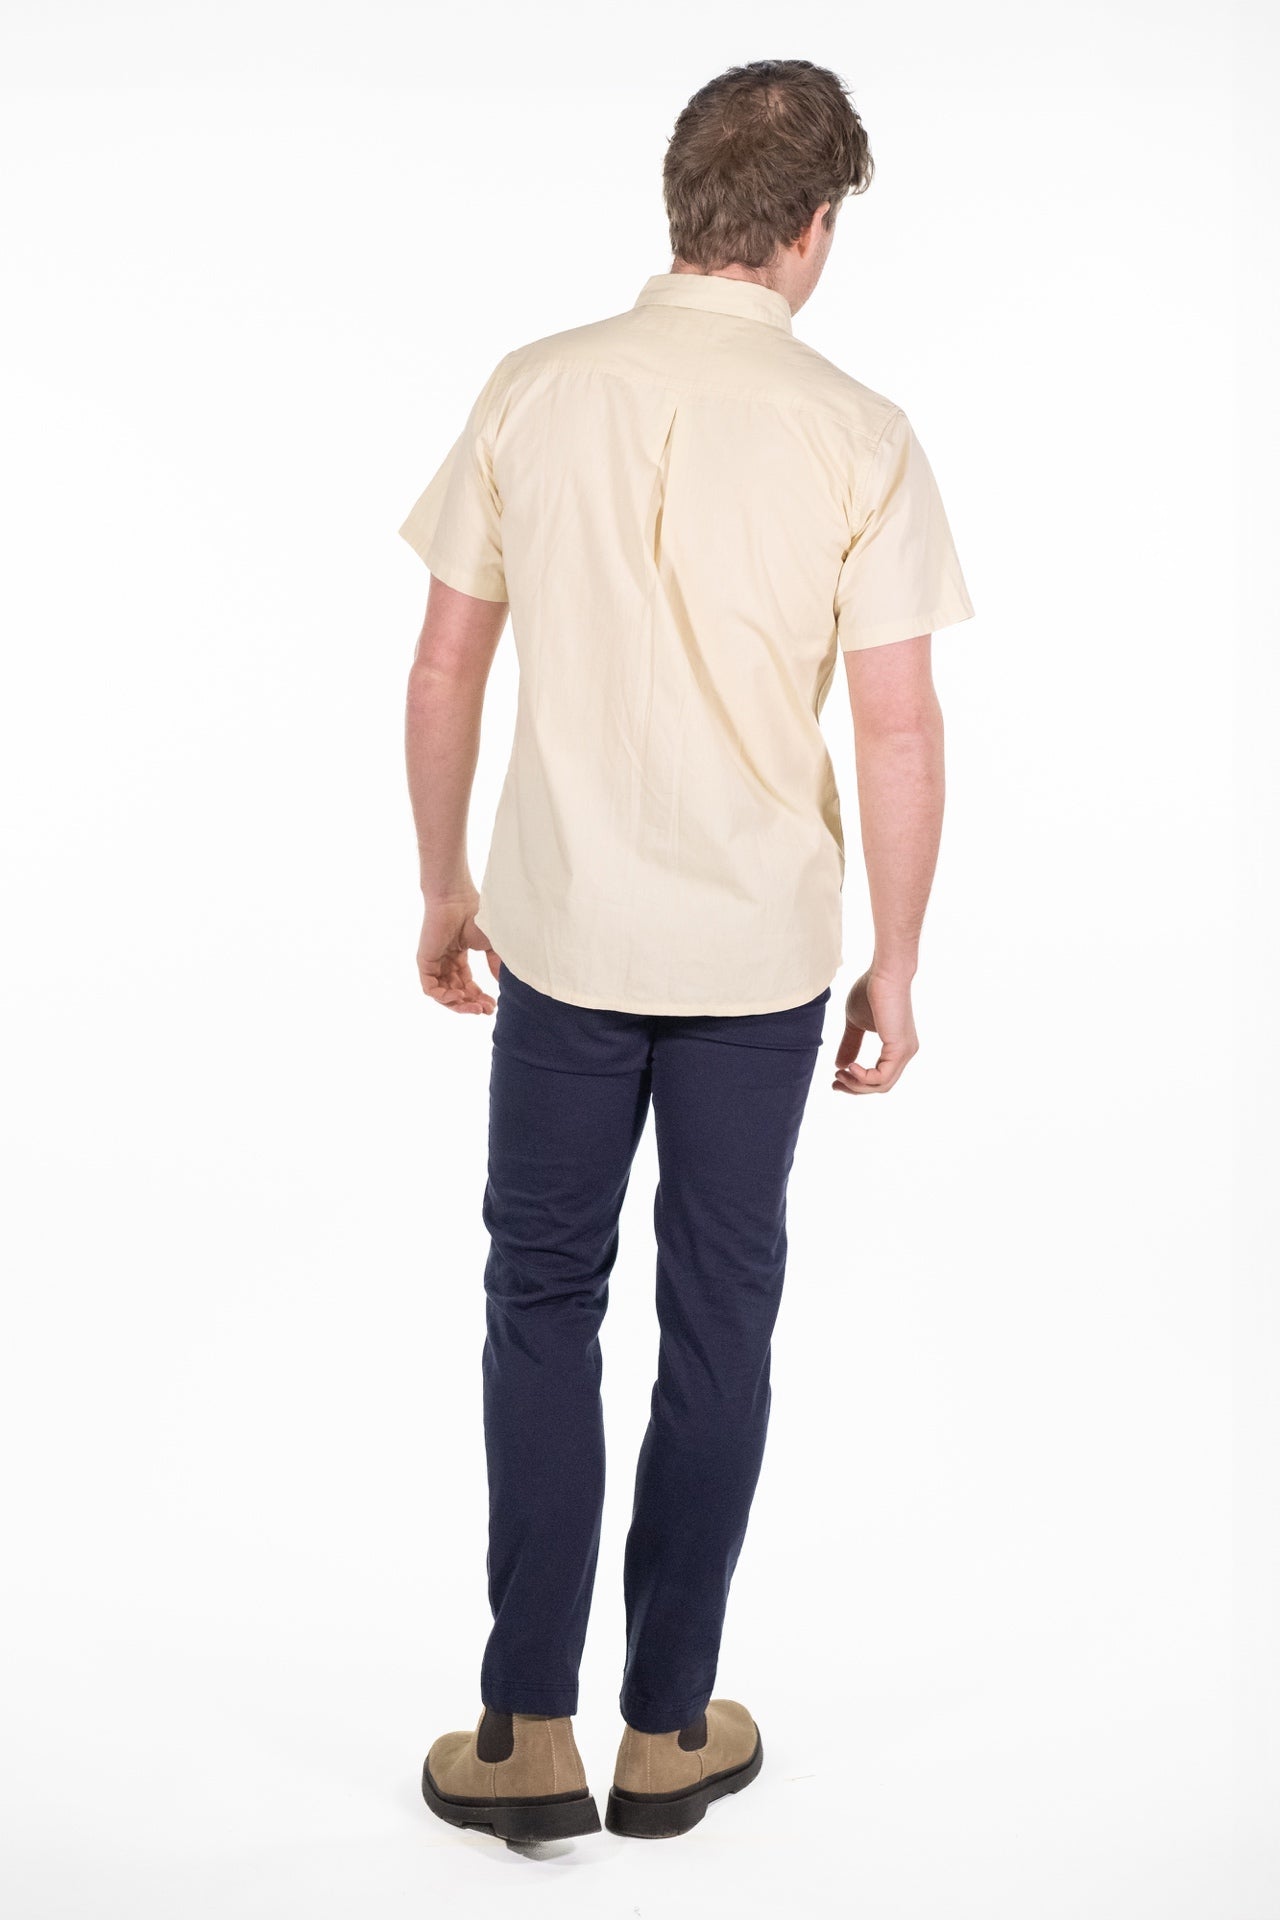 Otis Ecru Short Sleeved Shirt - Rupert and Buckley - Shirt